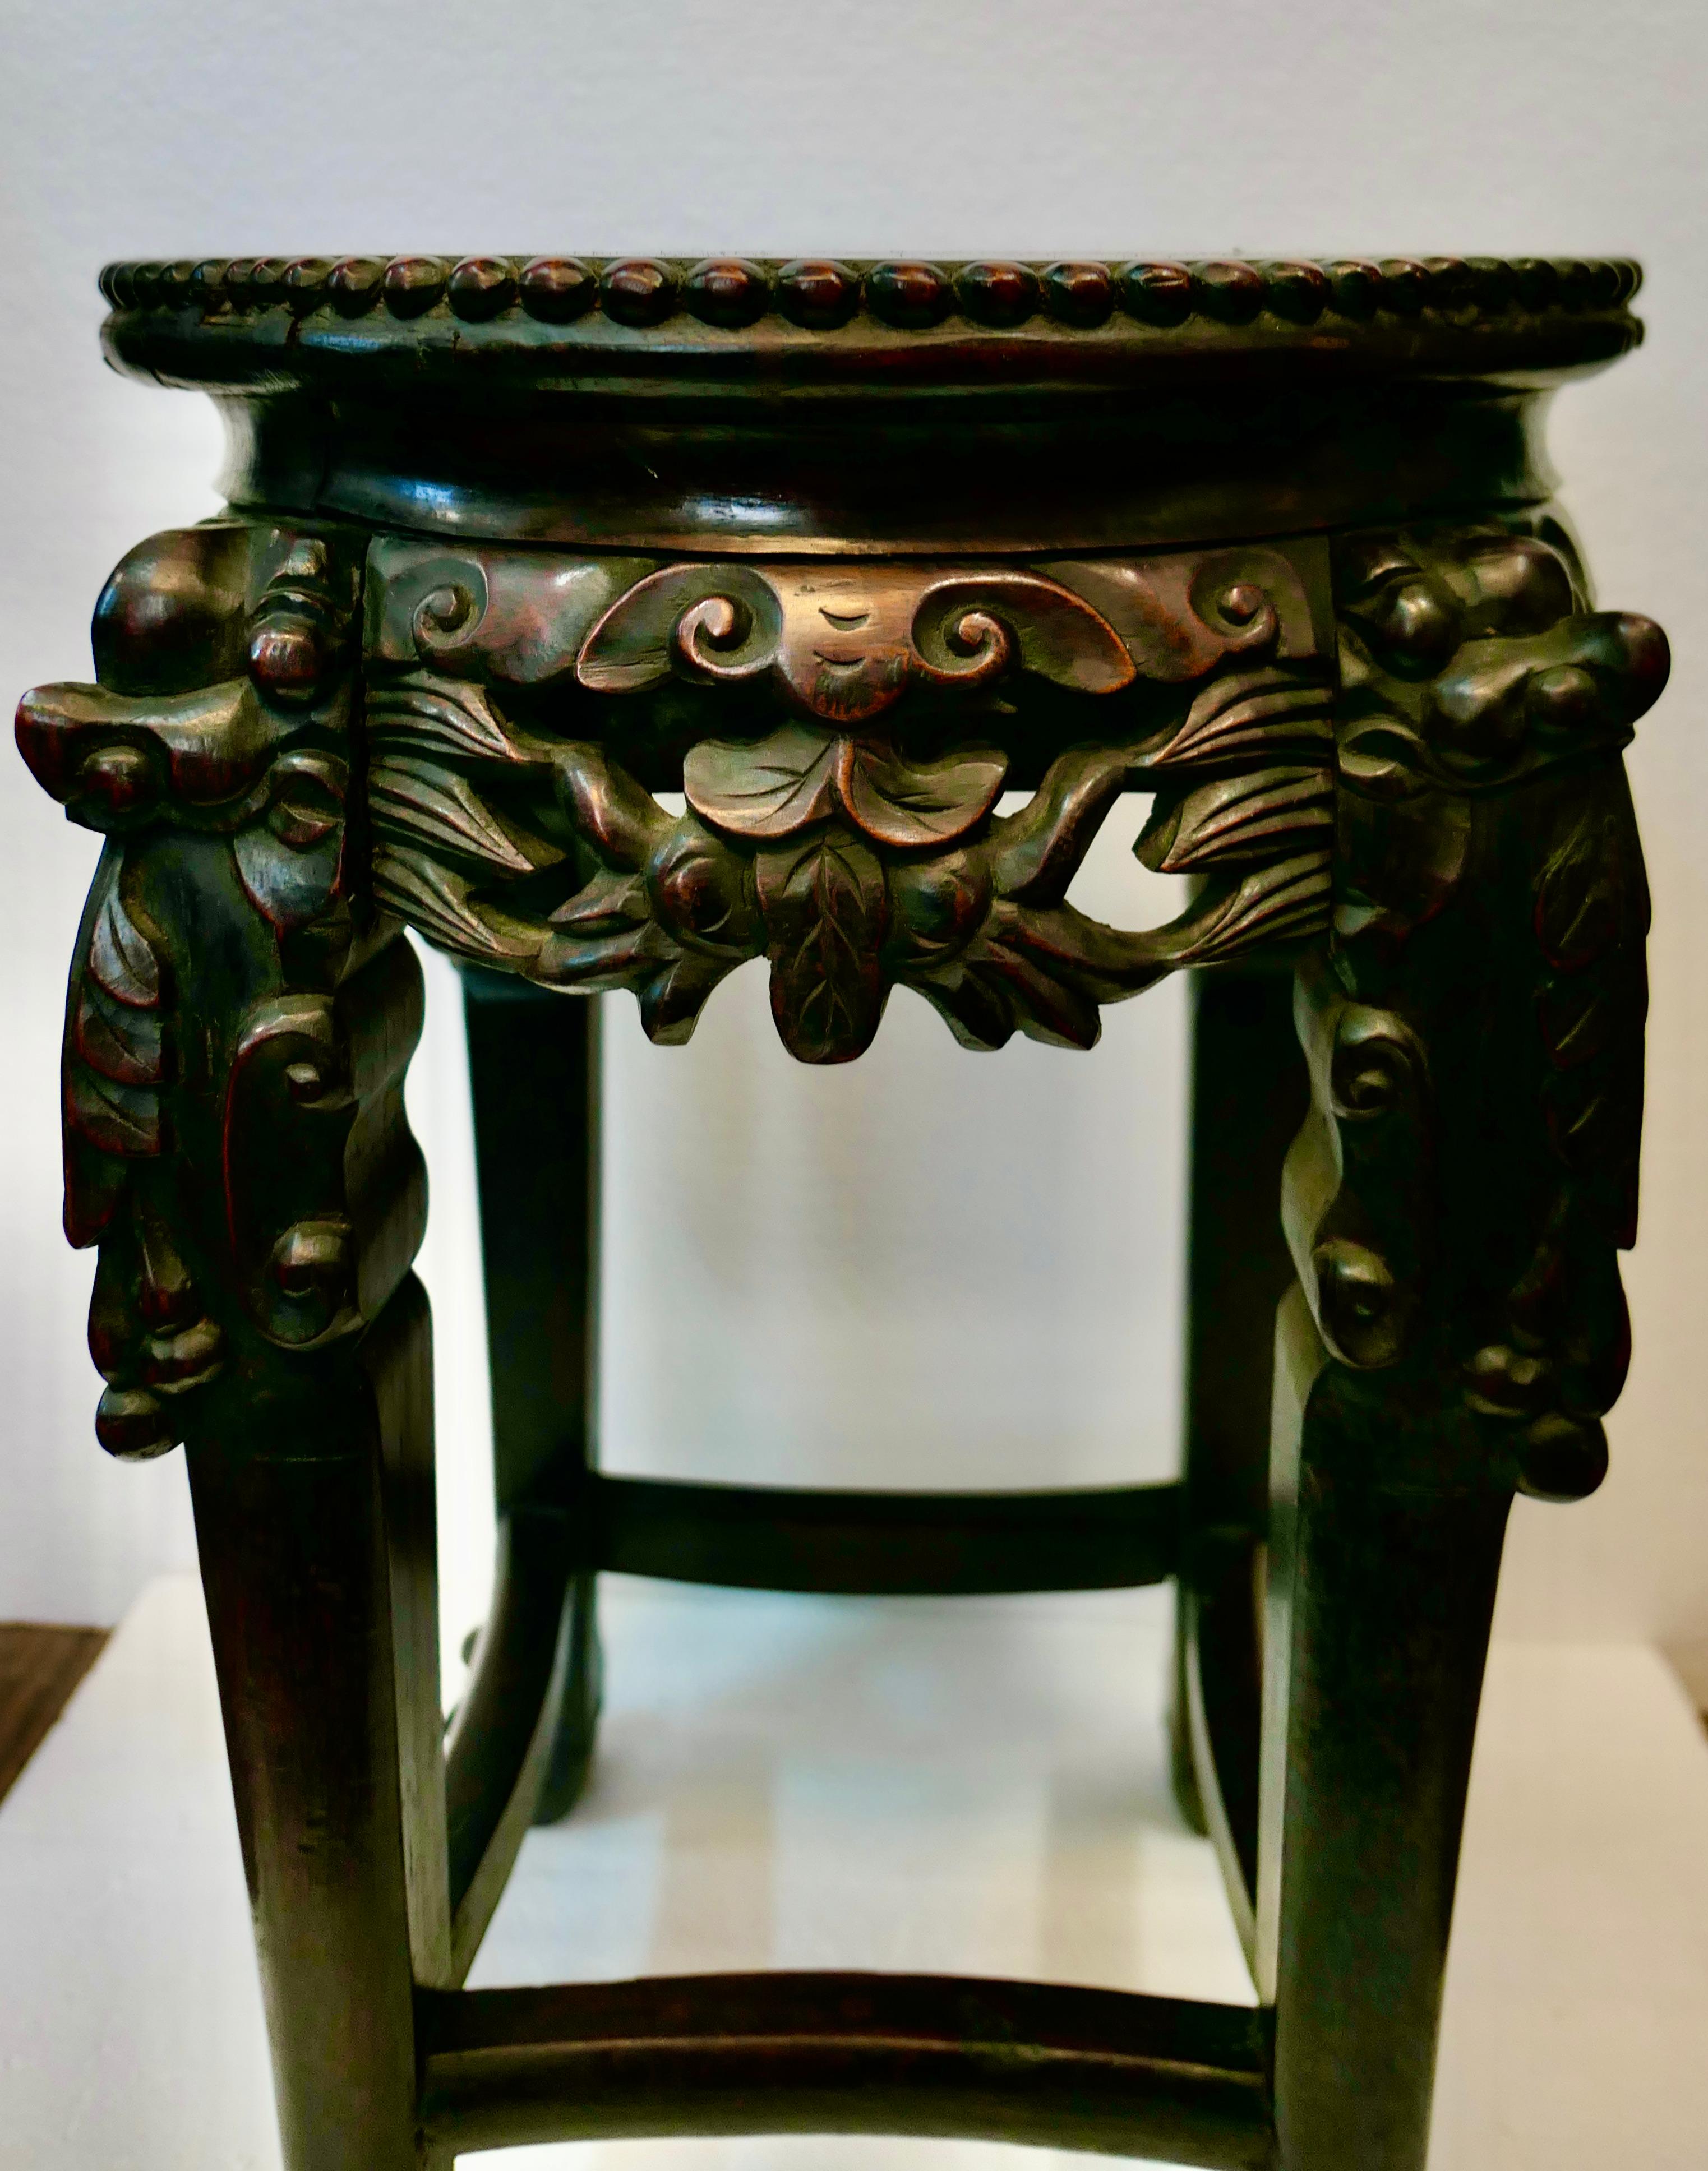 Dieser Vintage-Tisch aus chinesischem Teakholz aus den frühen 1900er Jahren ist wunderschön handgeschnitzt und mit vier abwechselnd geschnitzten Schürzen und Beinen versehen. Diese Beine haben ein auffälliges dekoratives Motiv, das durch Kugel- und